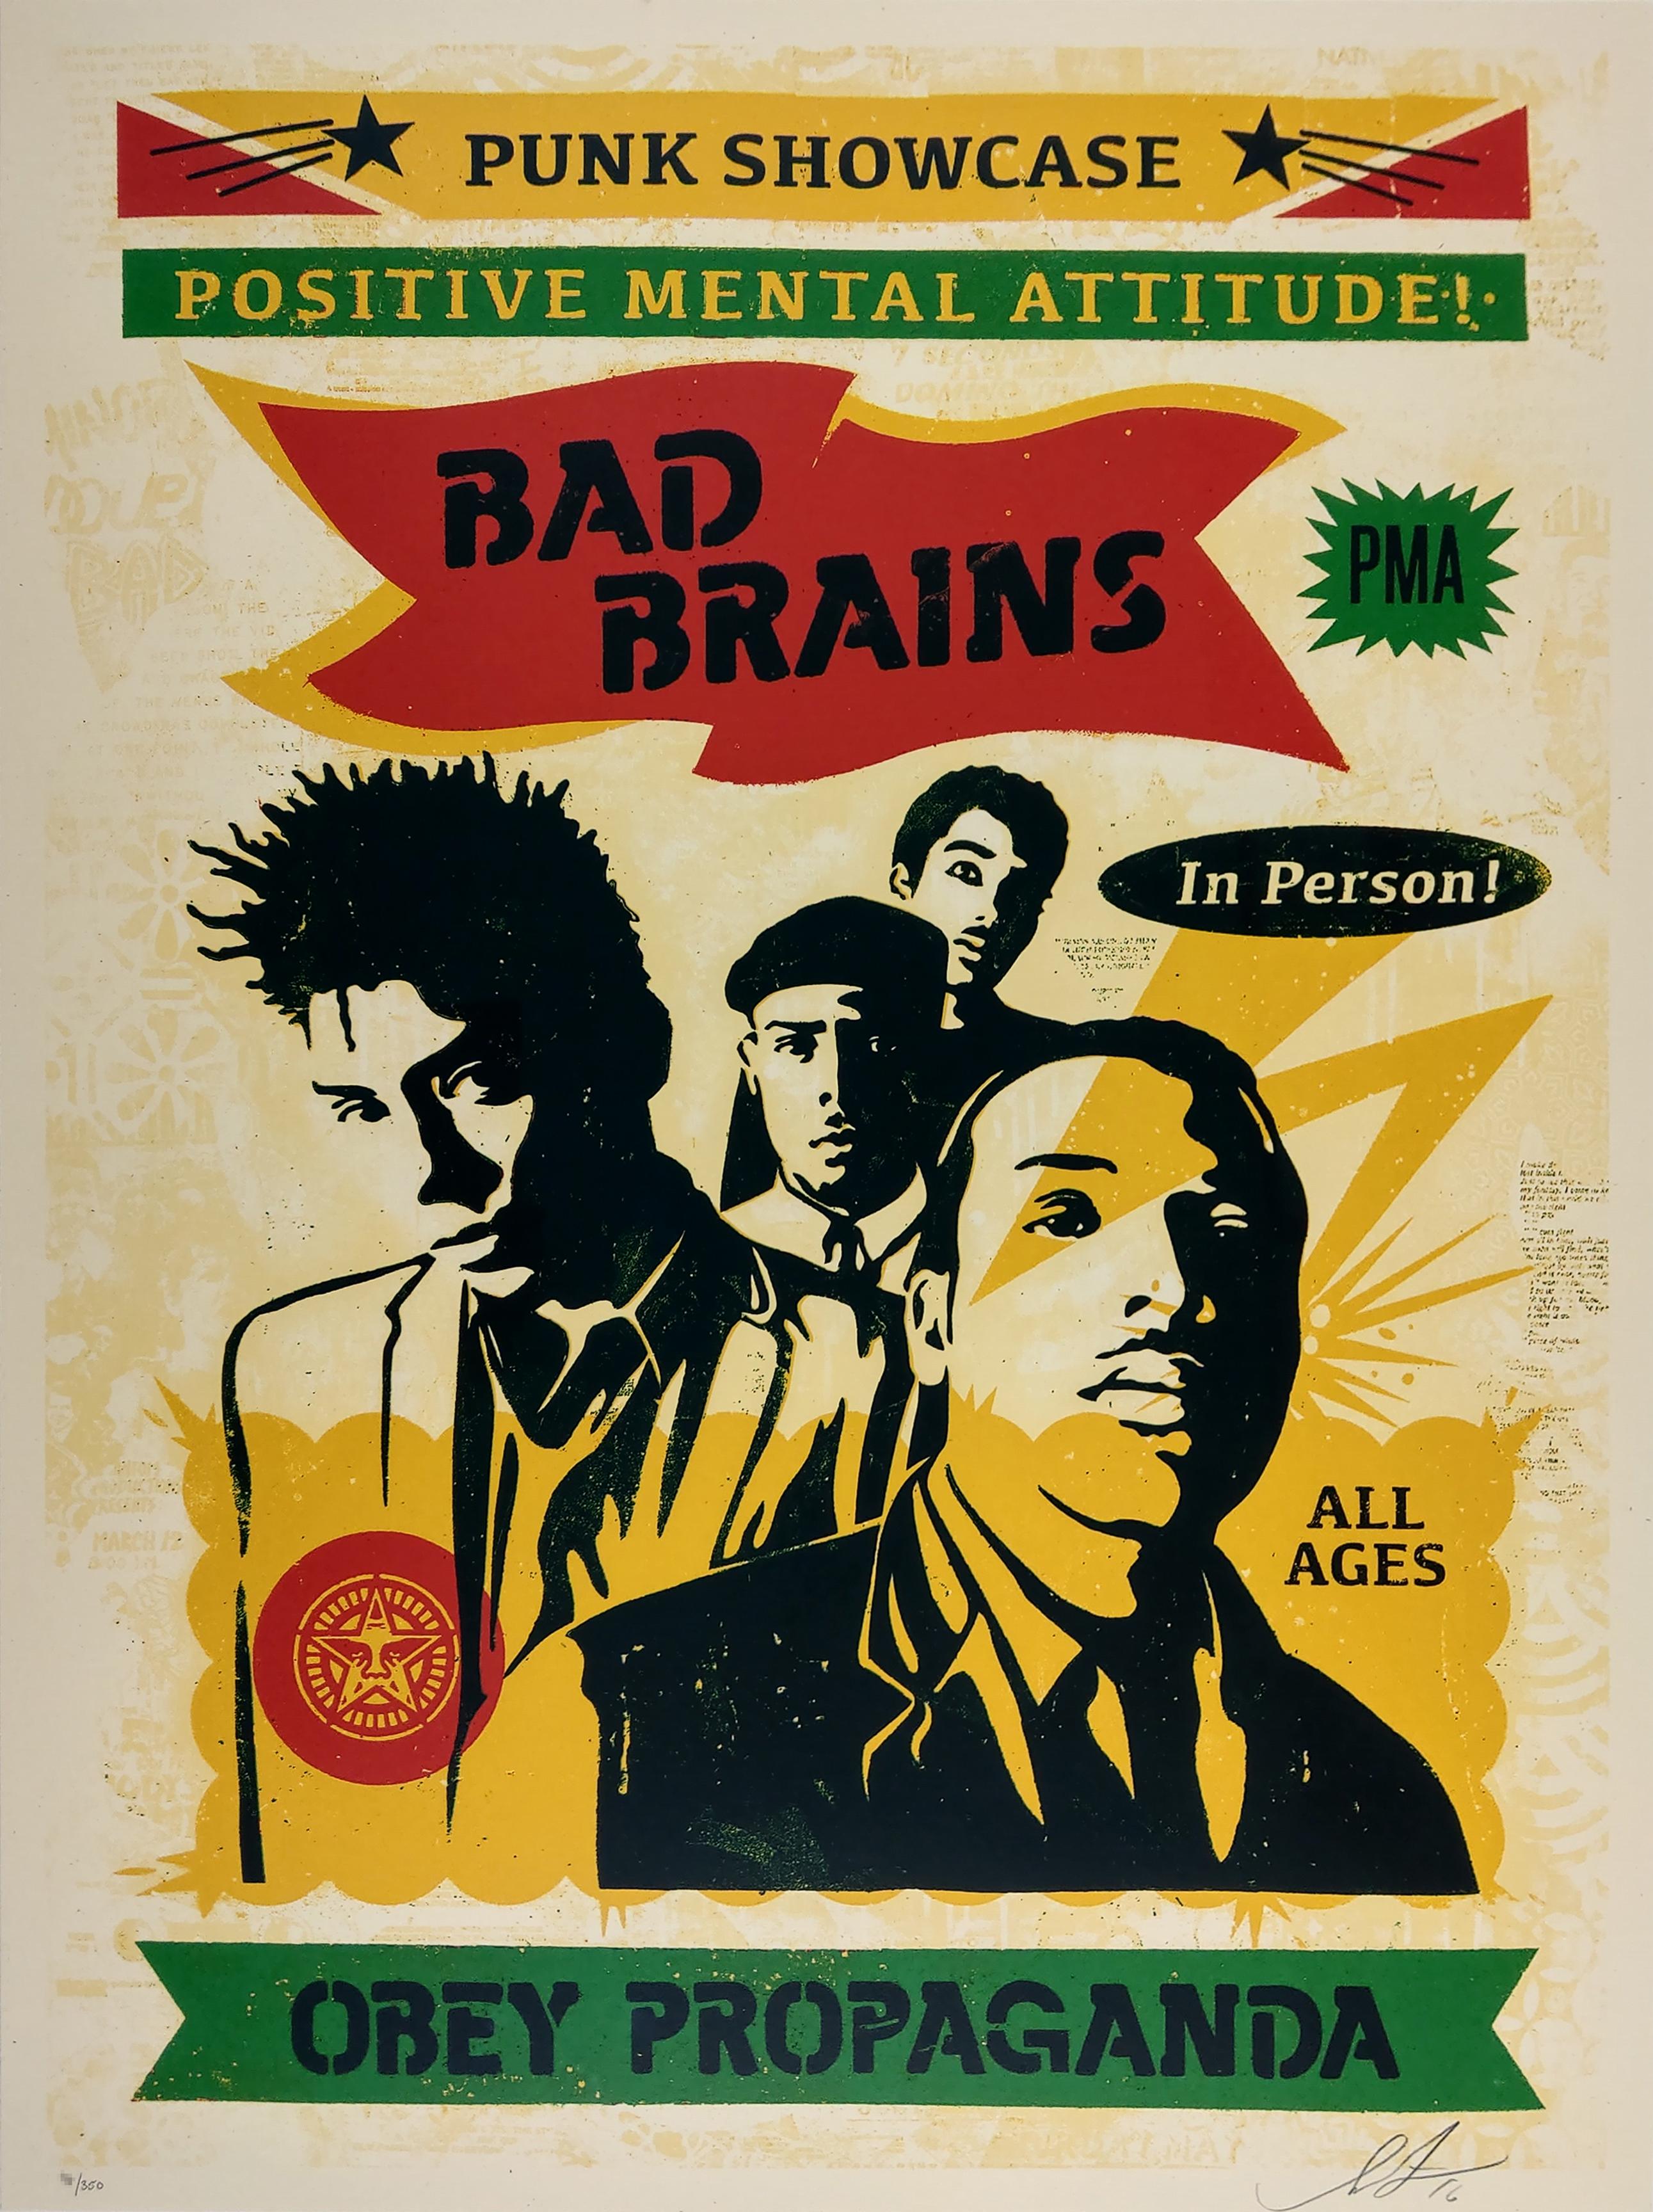 Bad Brains Punk Showcase (Rasta). 18 x 24 pouces. sérigraphie 5 couleurs sur papier crème Speckle Tone. Signé par Shepard Fairey. Edition de 350 exemplaires.
 
Shepard Fairey est un acteur majeur du mouvement des arts de la rue, aux côtés de Banksy,